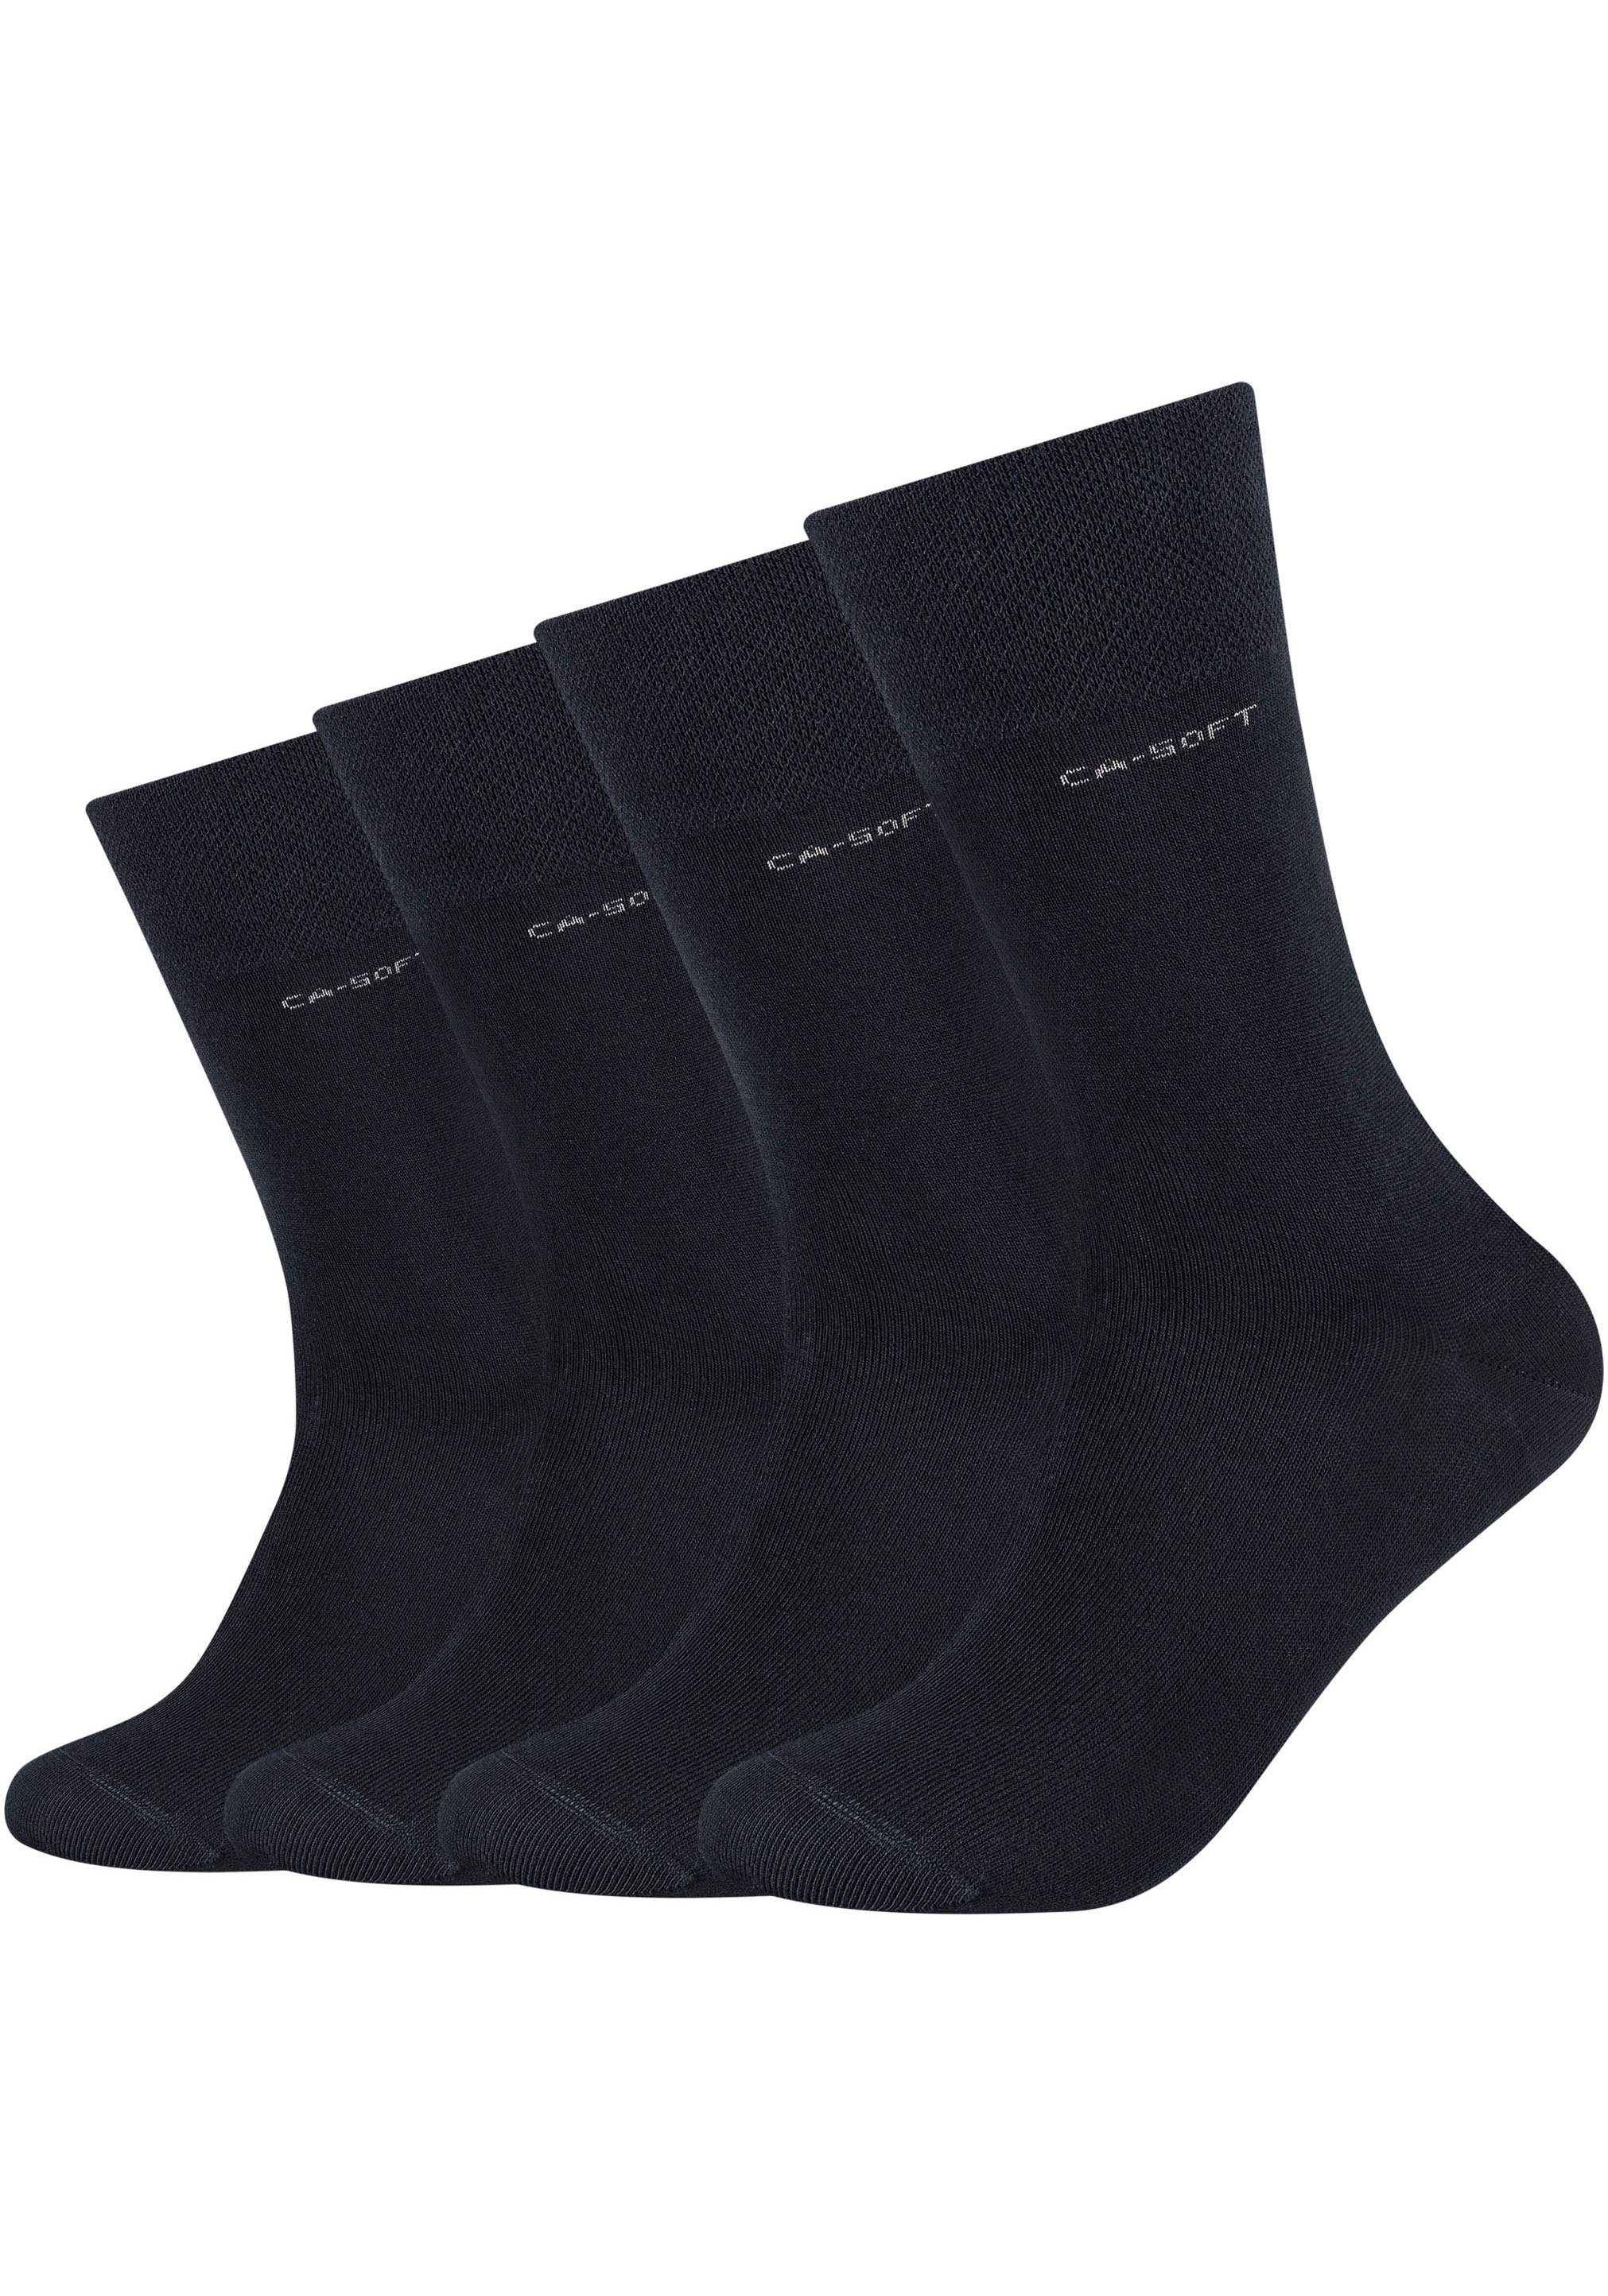 Zehenbereich Mit verstärktem Fersen- (Packung, Camano und 4-Paar) Socken navy